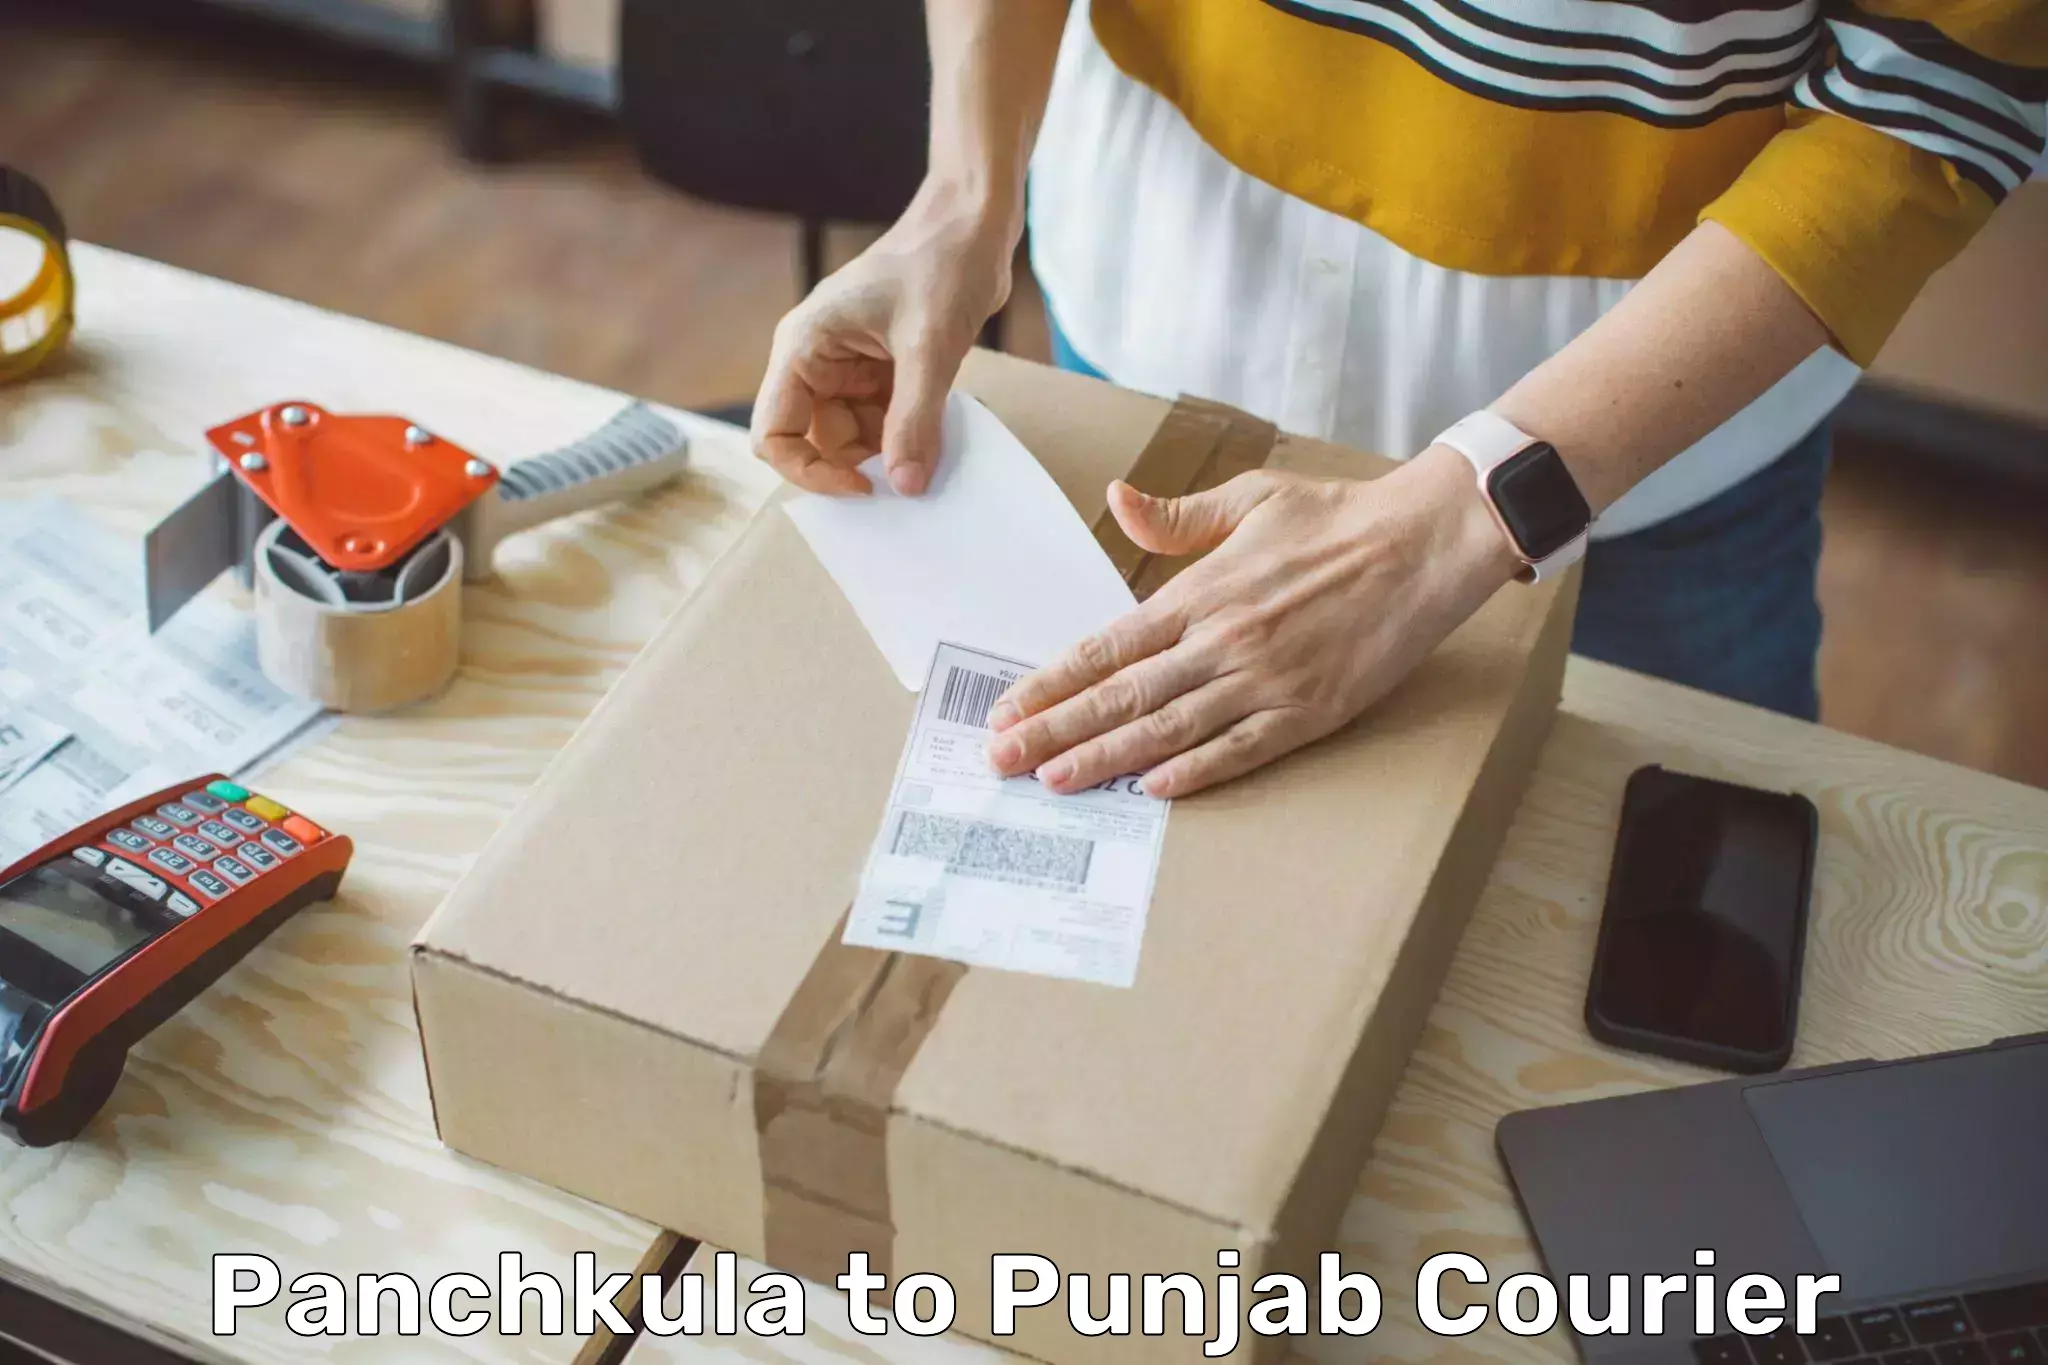 24-hour delivery options Panchkula to Batala